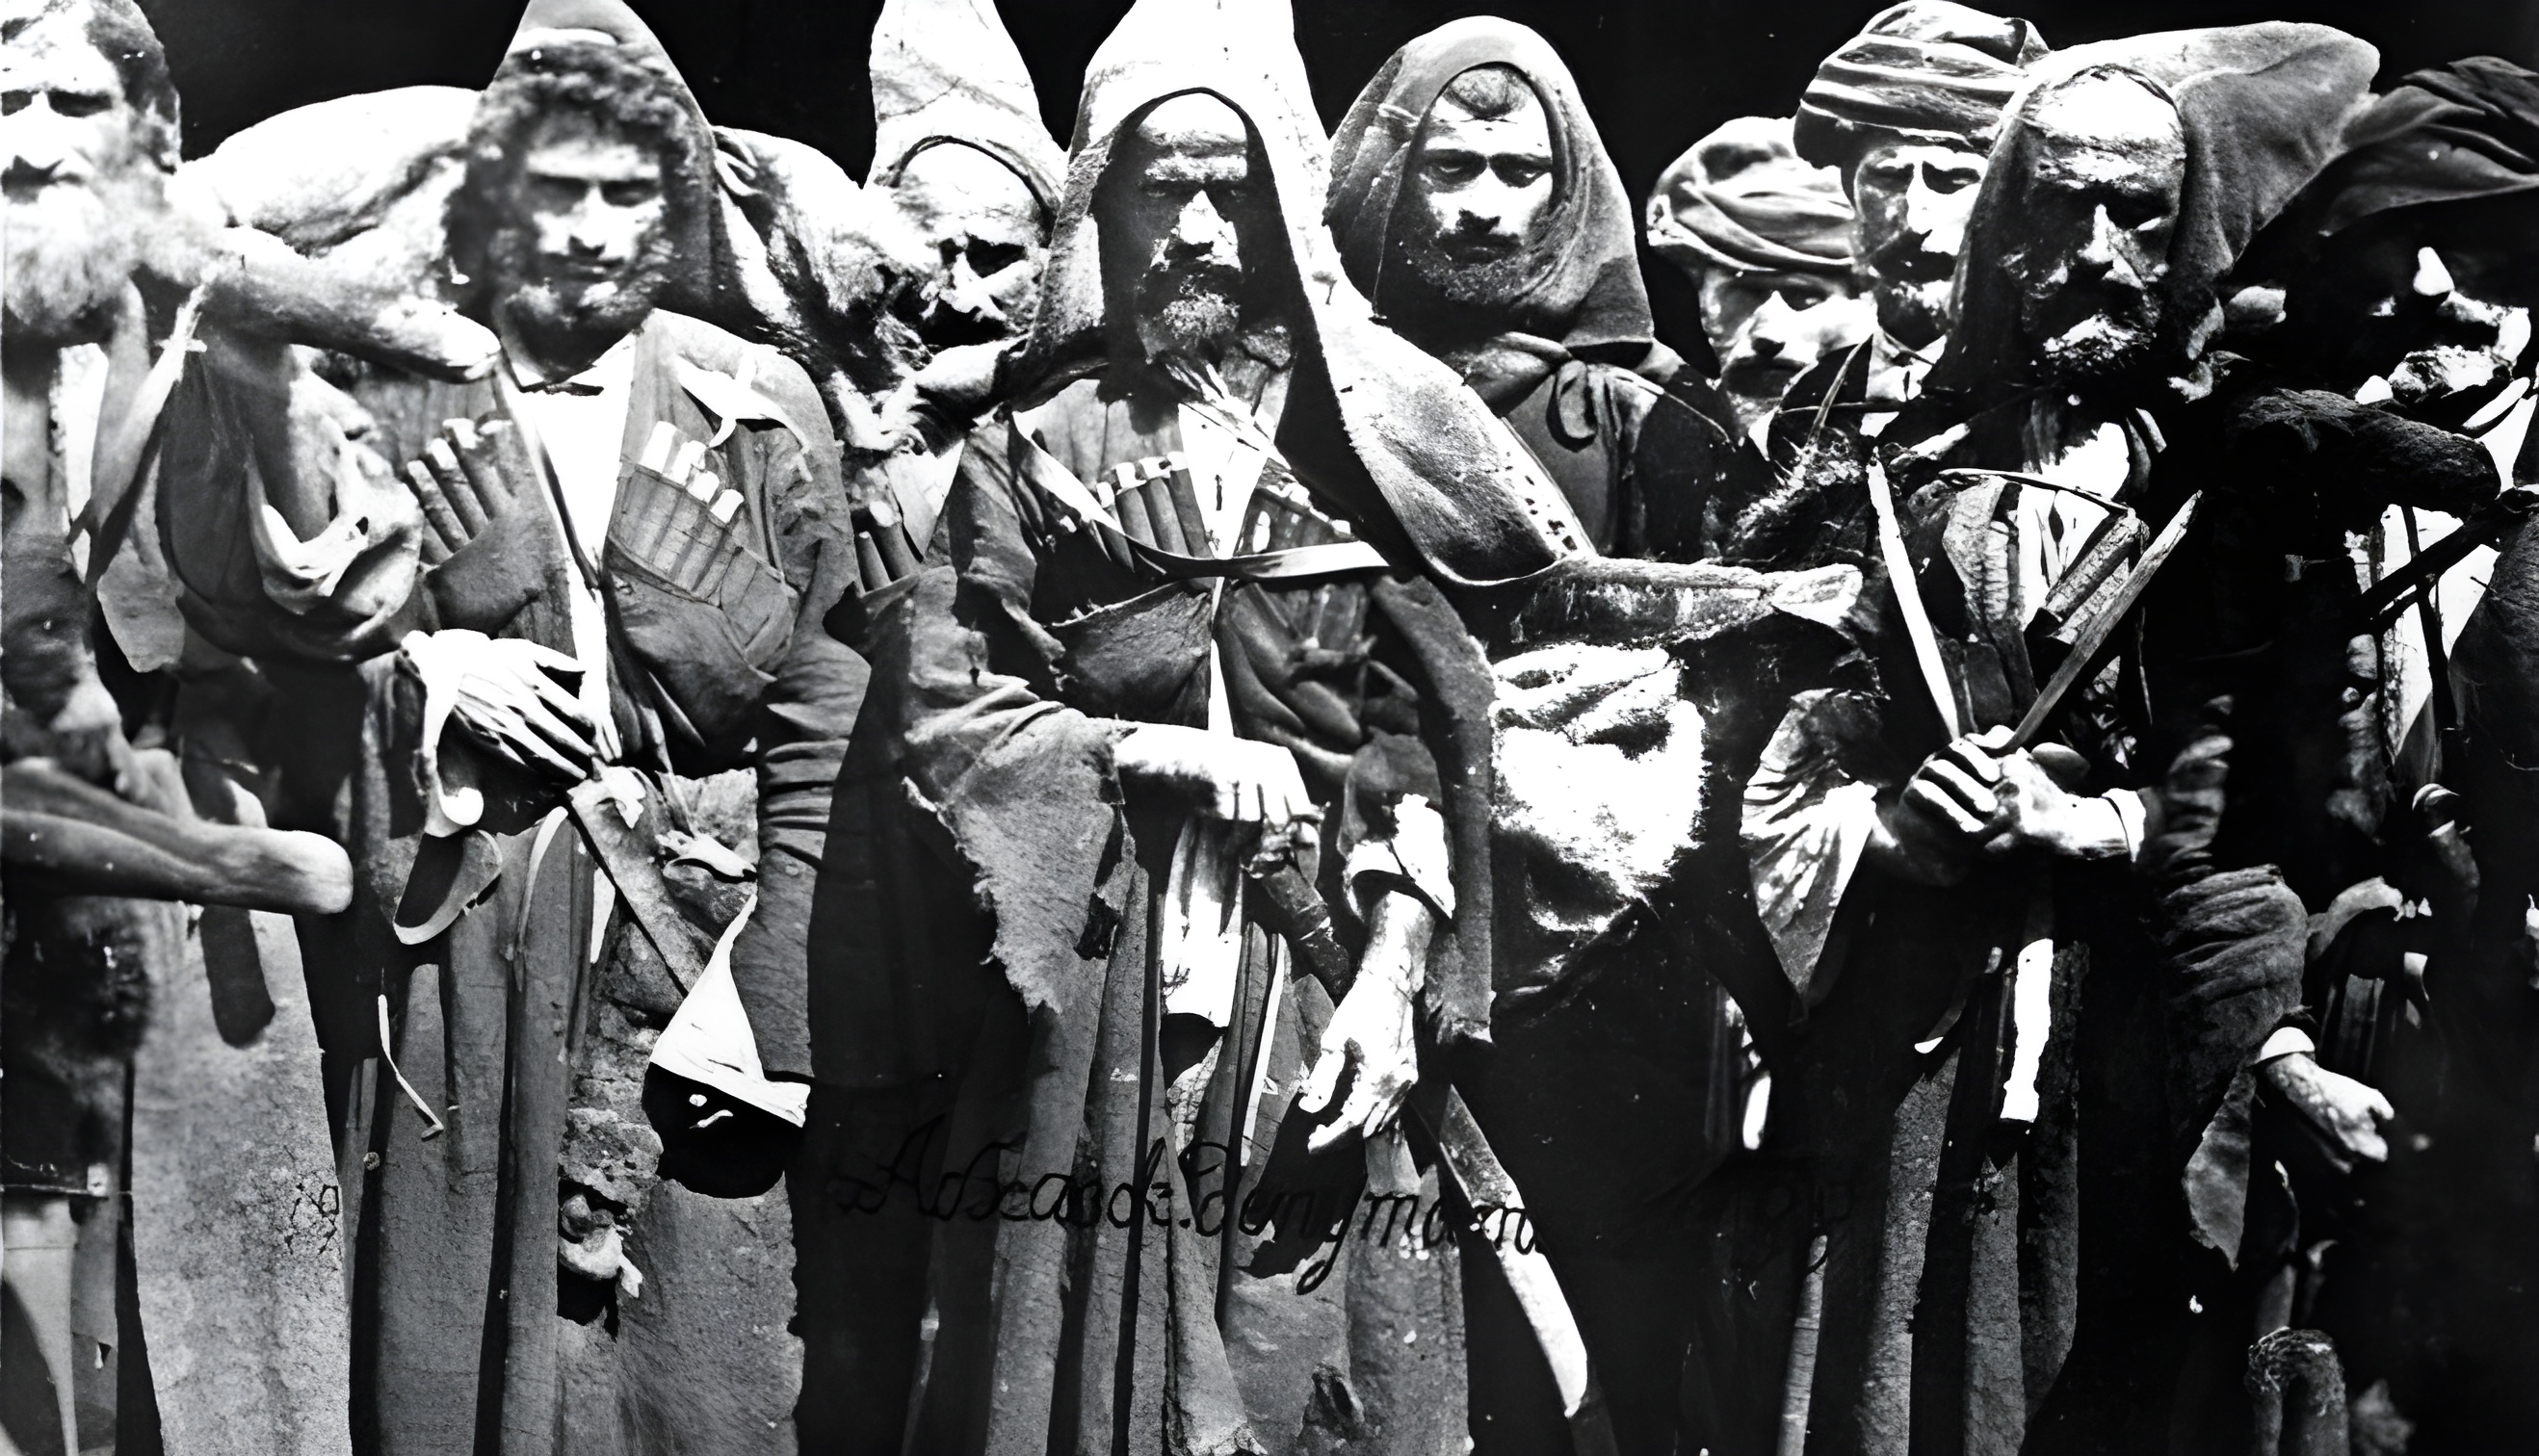 Abkhazians who took part in the 1866 Lykhny rebellion. Photo by Dmitri Yermakov (1846-1916).